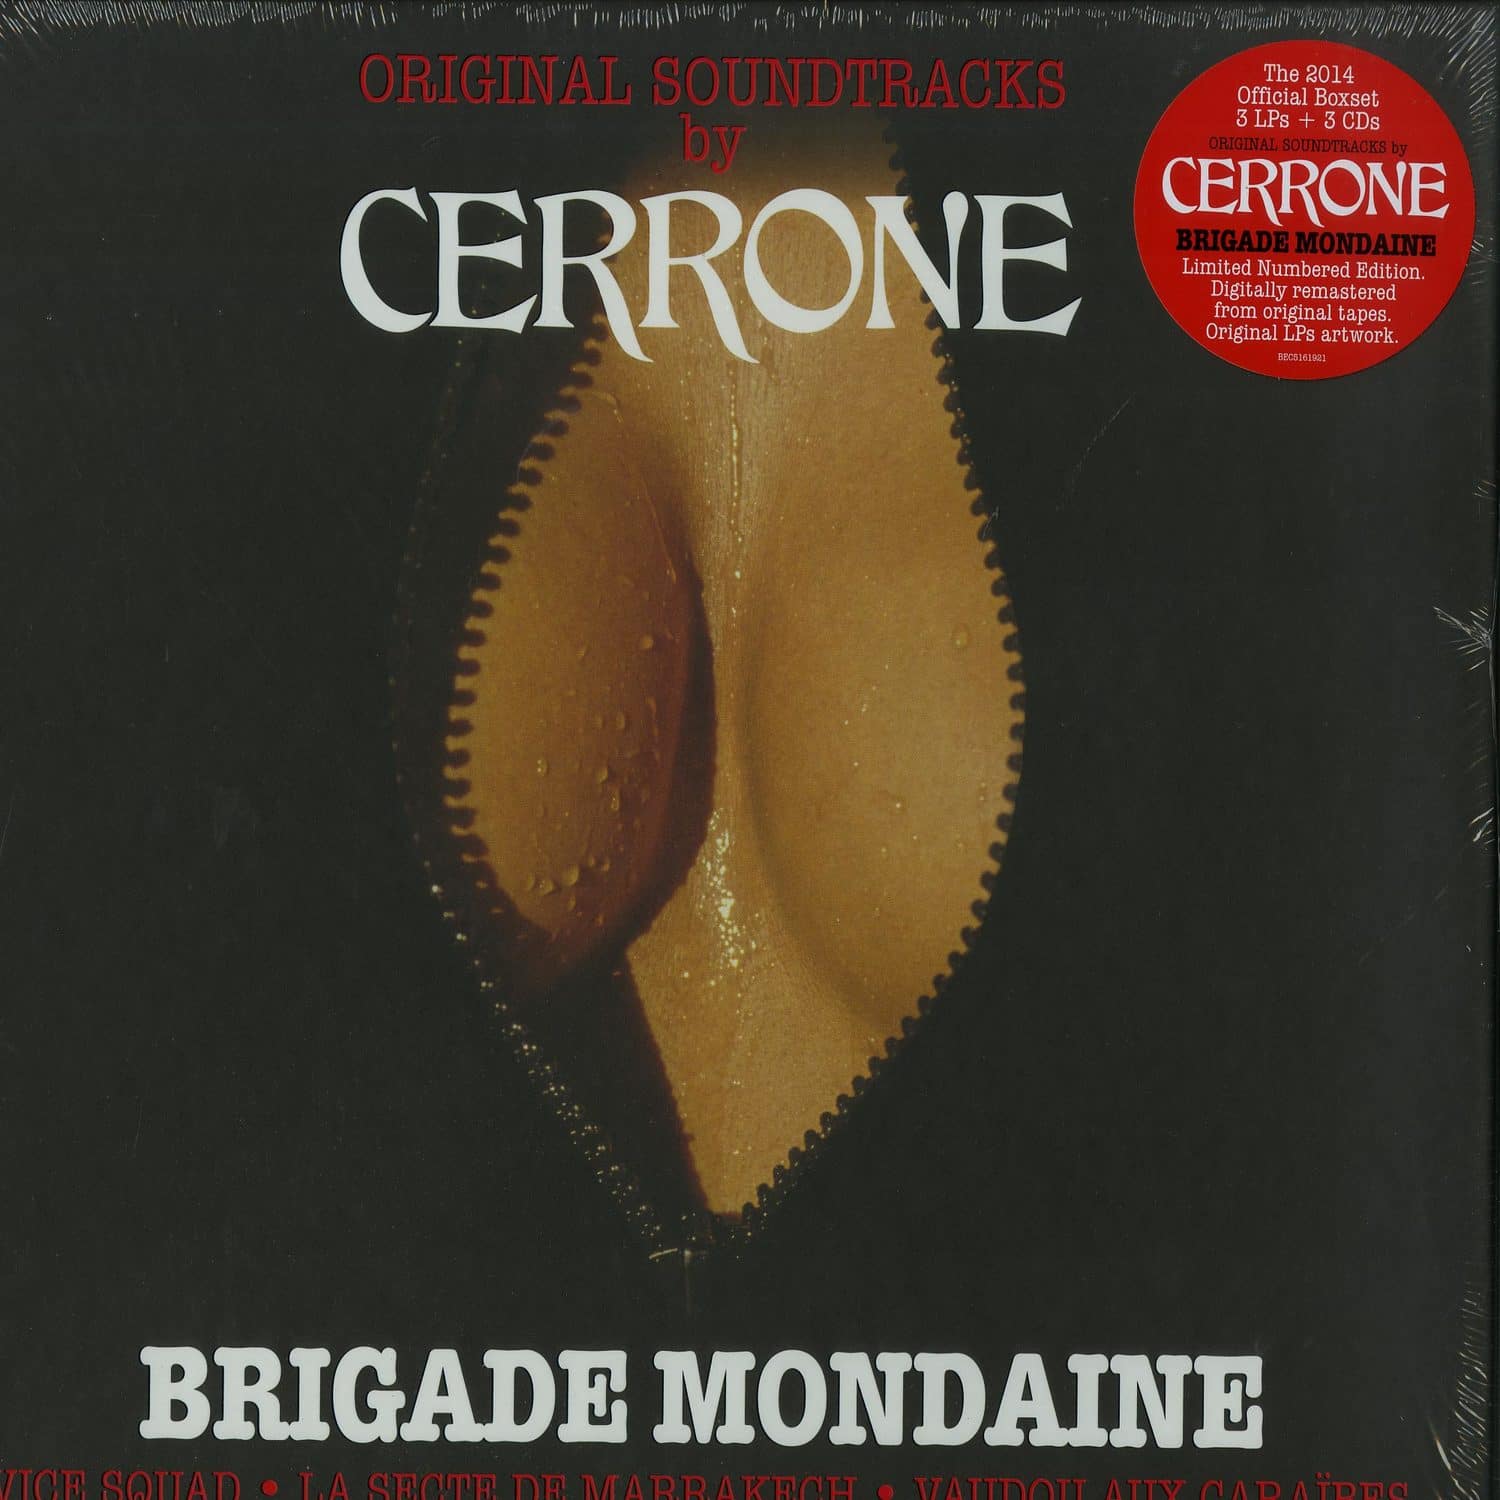 Cerrone - BRIGADE MONDAINE 